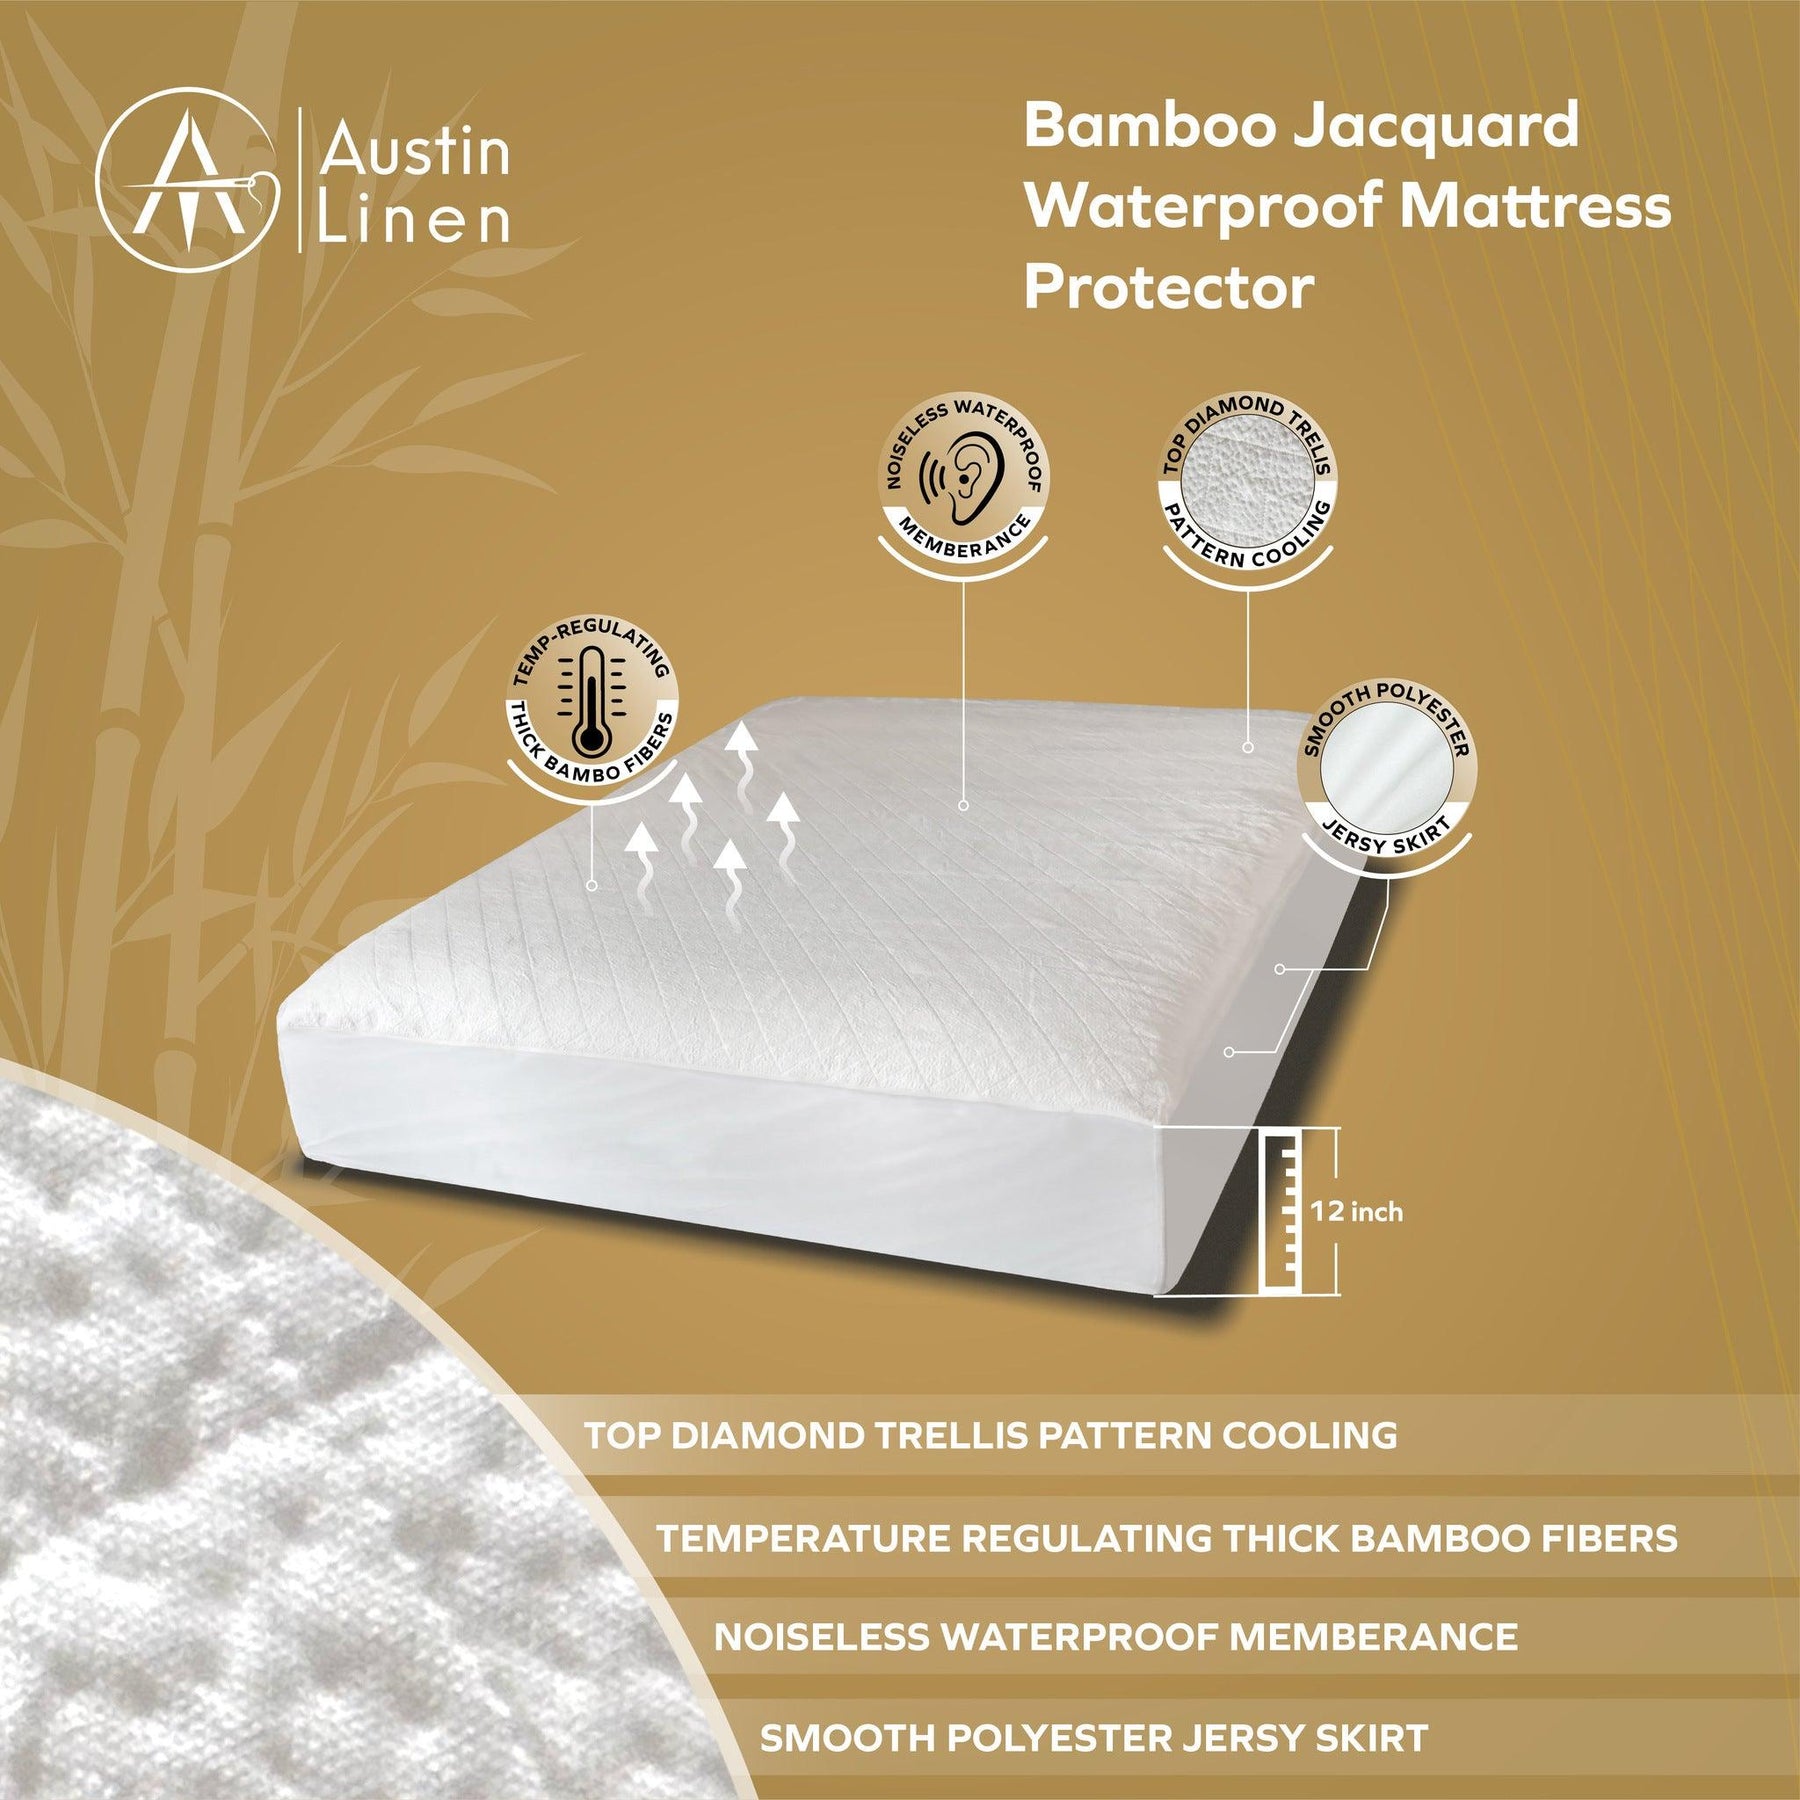 https://austinlinen.com/cdn/shop/files/bamboo-jacquard-waterproof-mattress-protector-austin-linen-3-34758077612329_1800x1800.jpg?v=1693738058